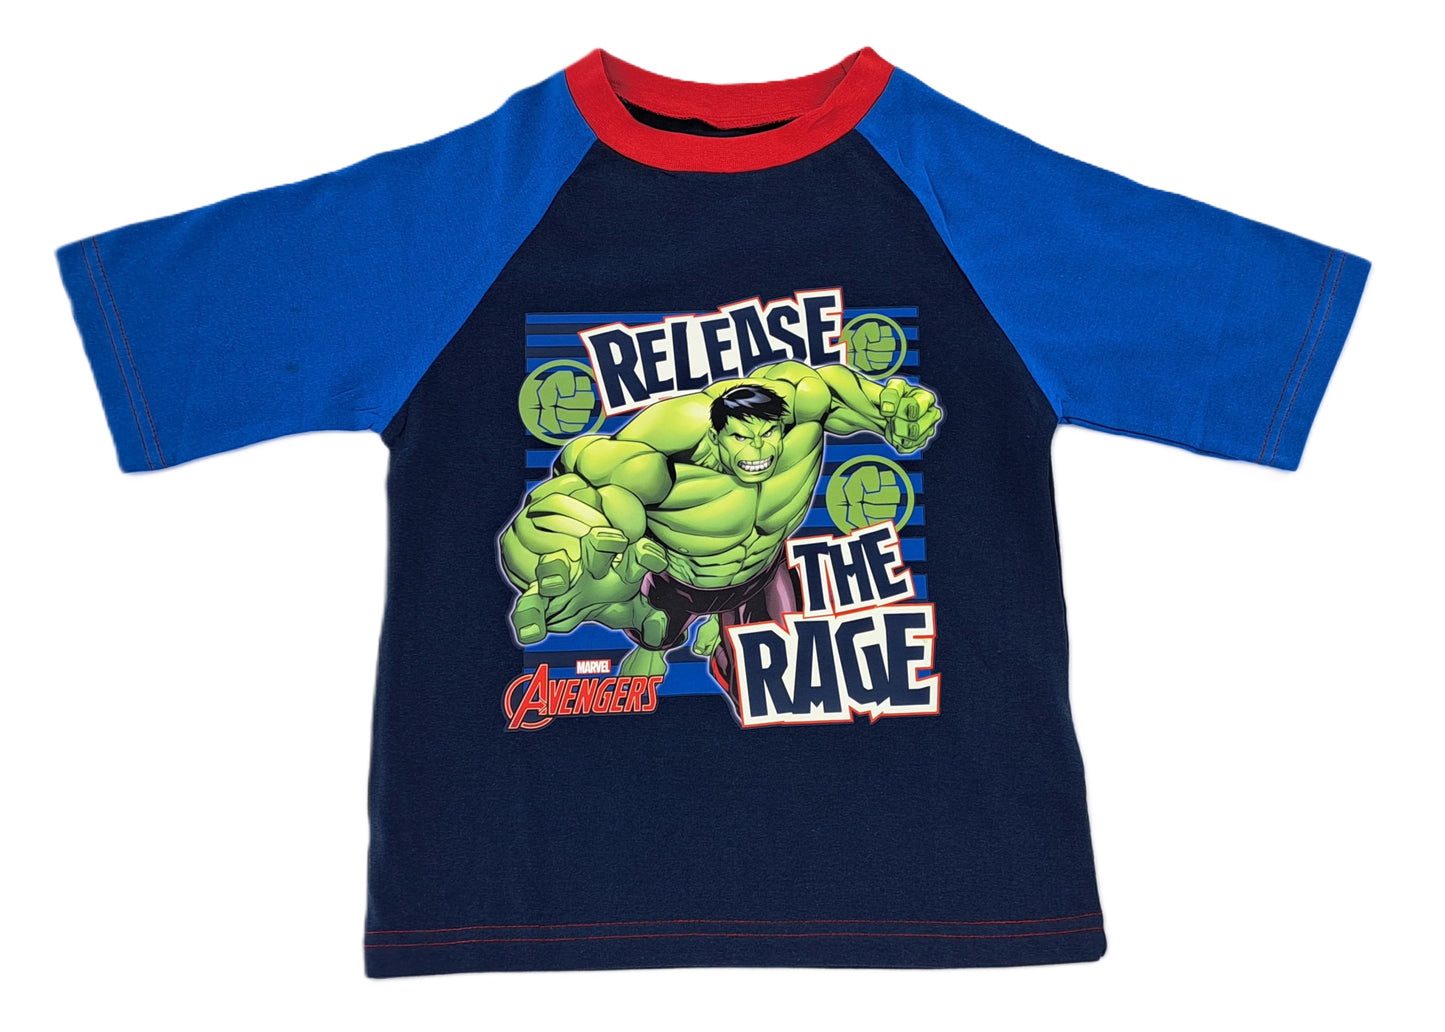 The Hulk "Release The Rage" Boys Shortie Pyjamas